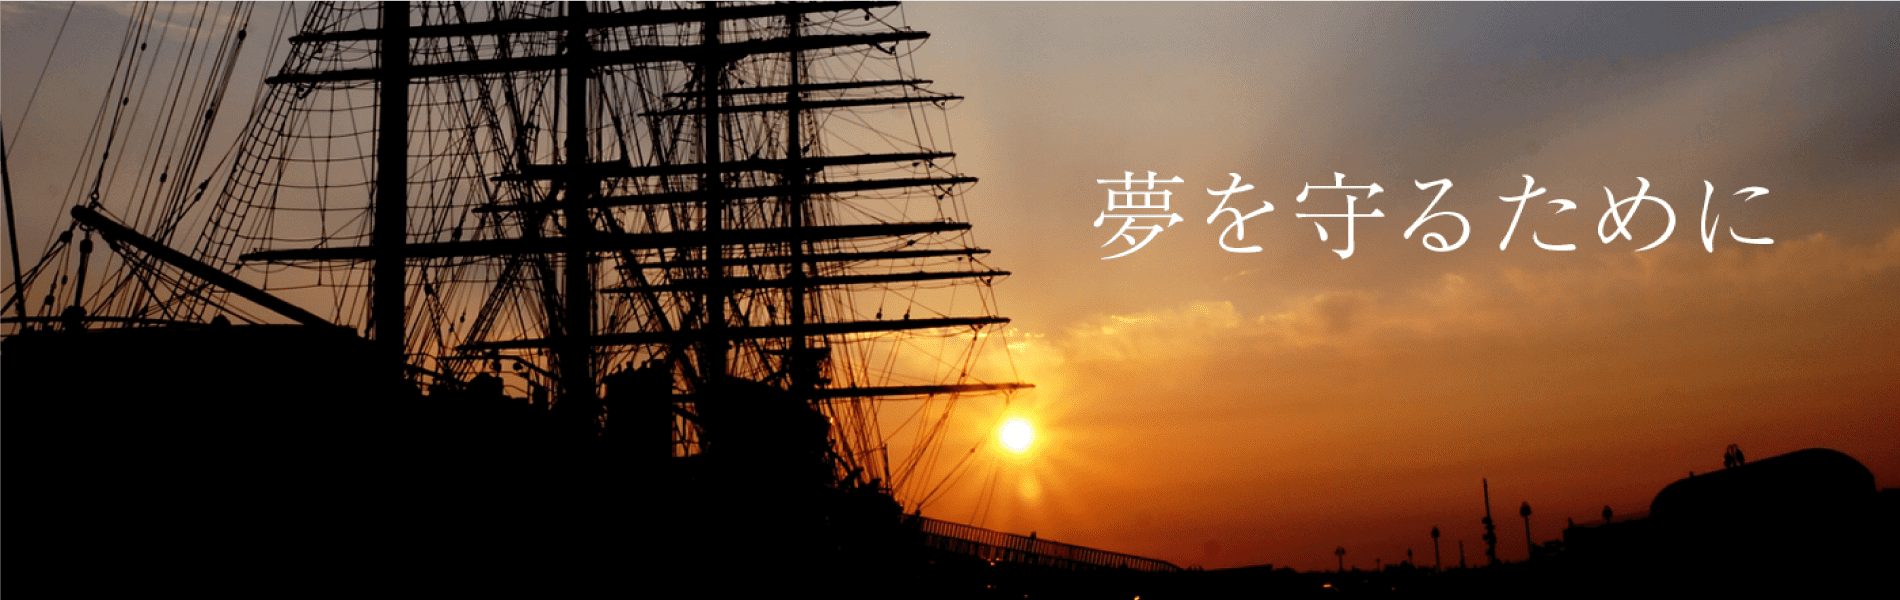 夕日と船の写真